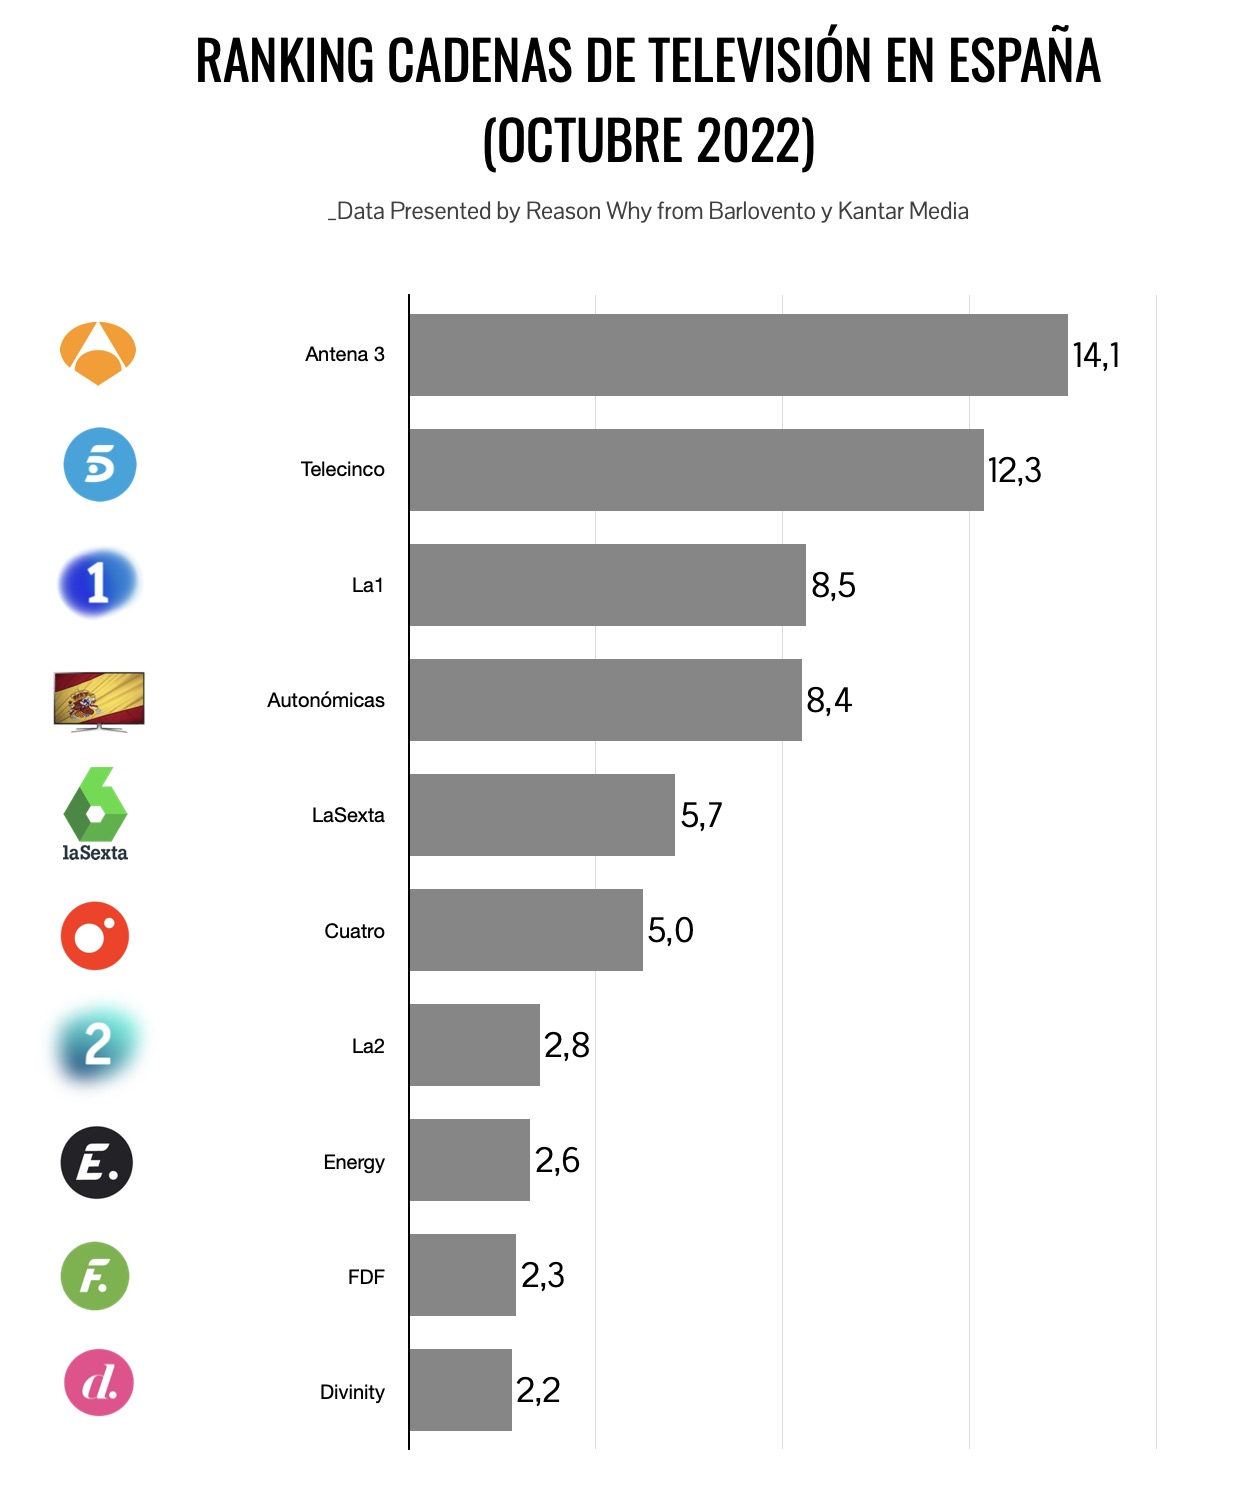 Ranking de cadenas de televisión octubre 2022